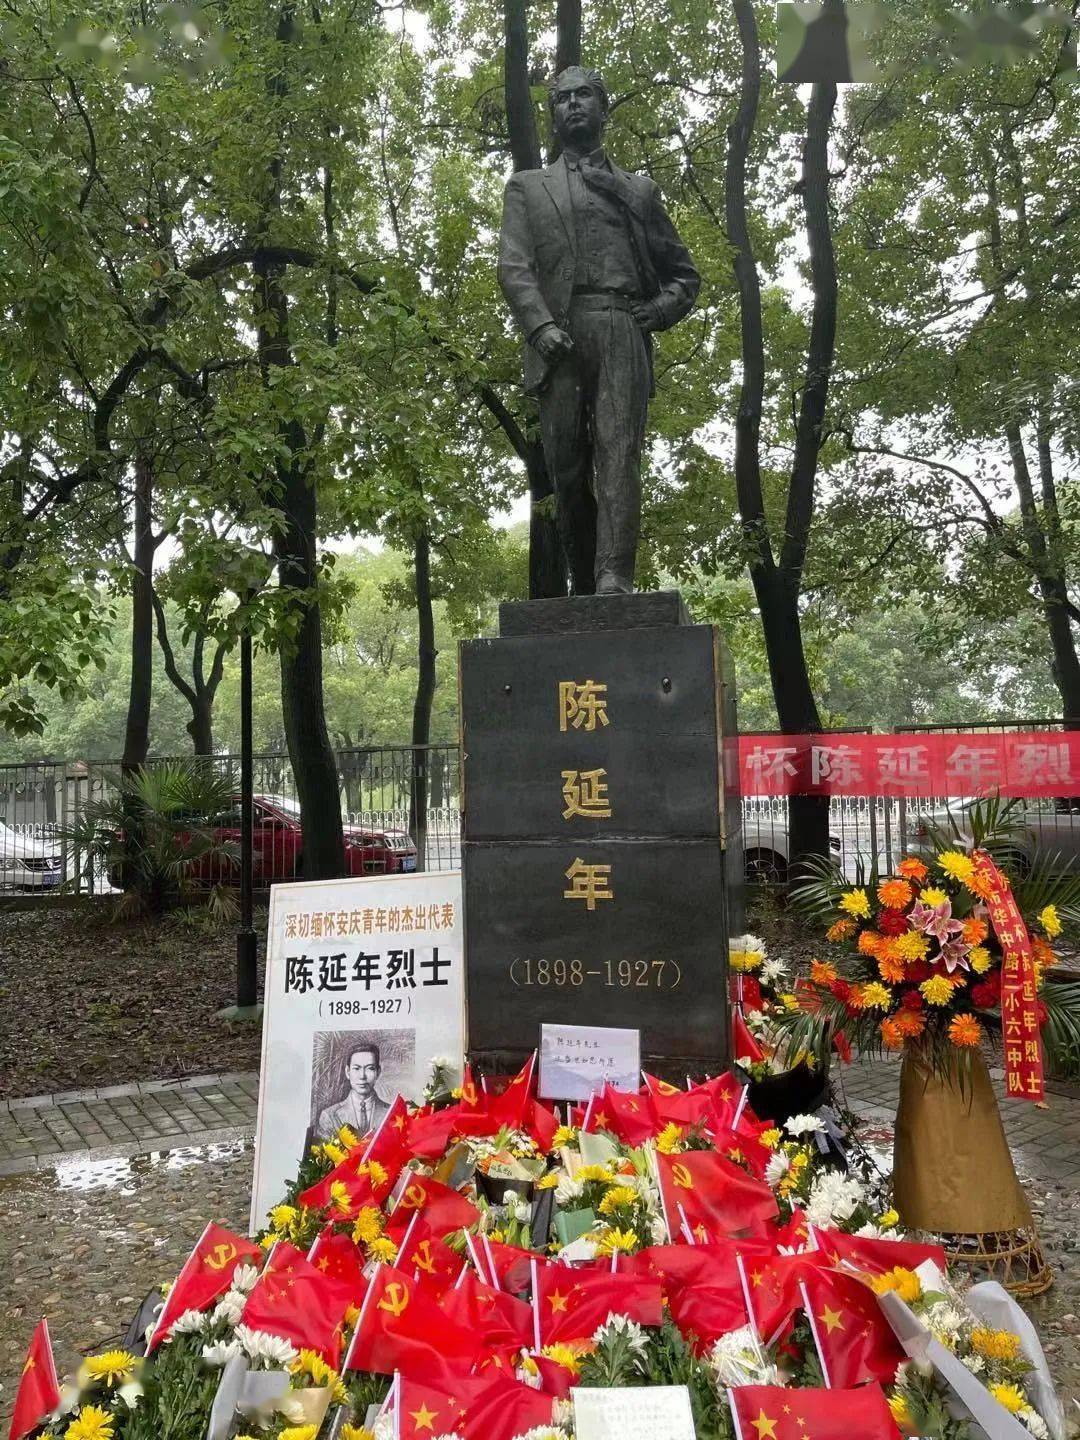 今天,在安庆菱湖岸边,陈延年烈士雕像前;在合肥延乔路路牌下,都铺满了